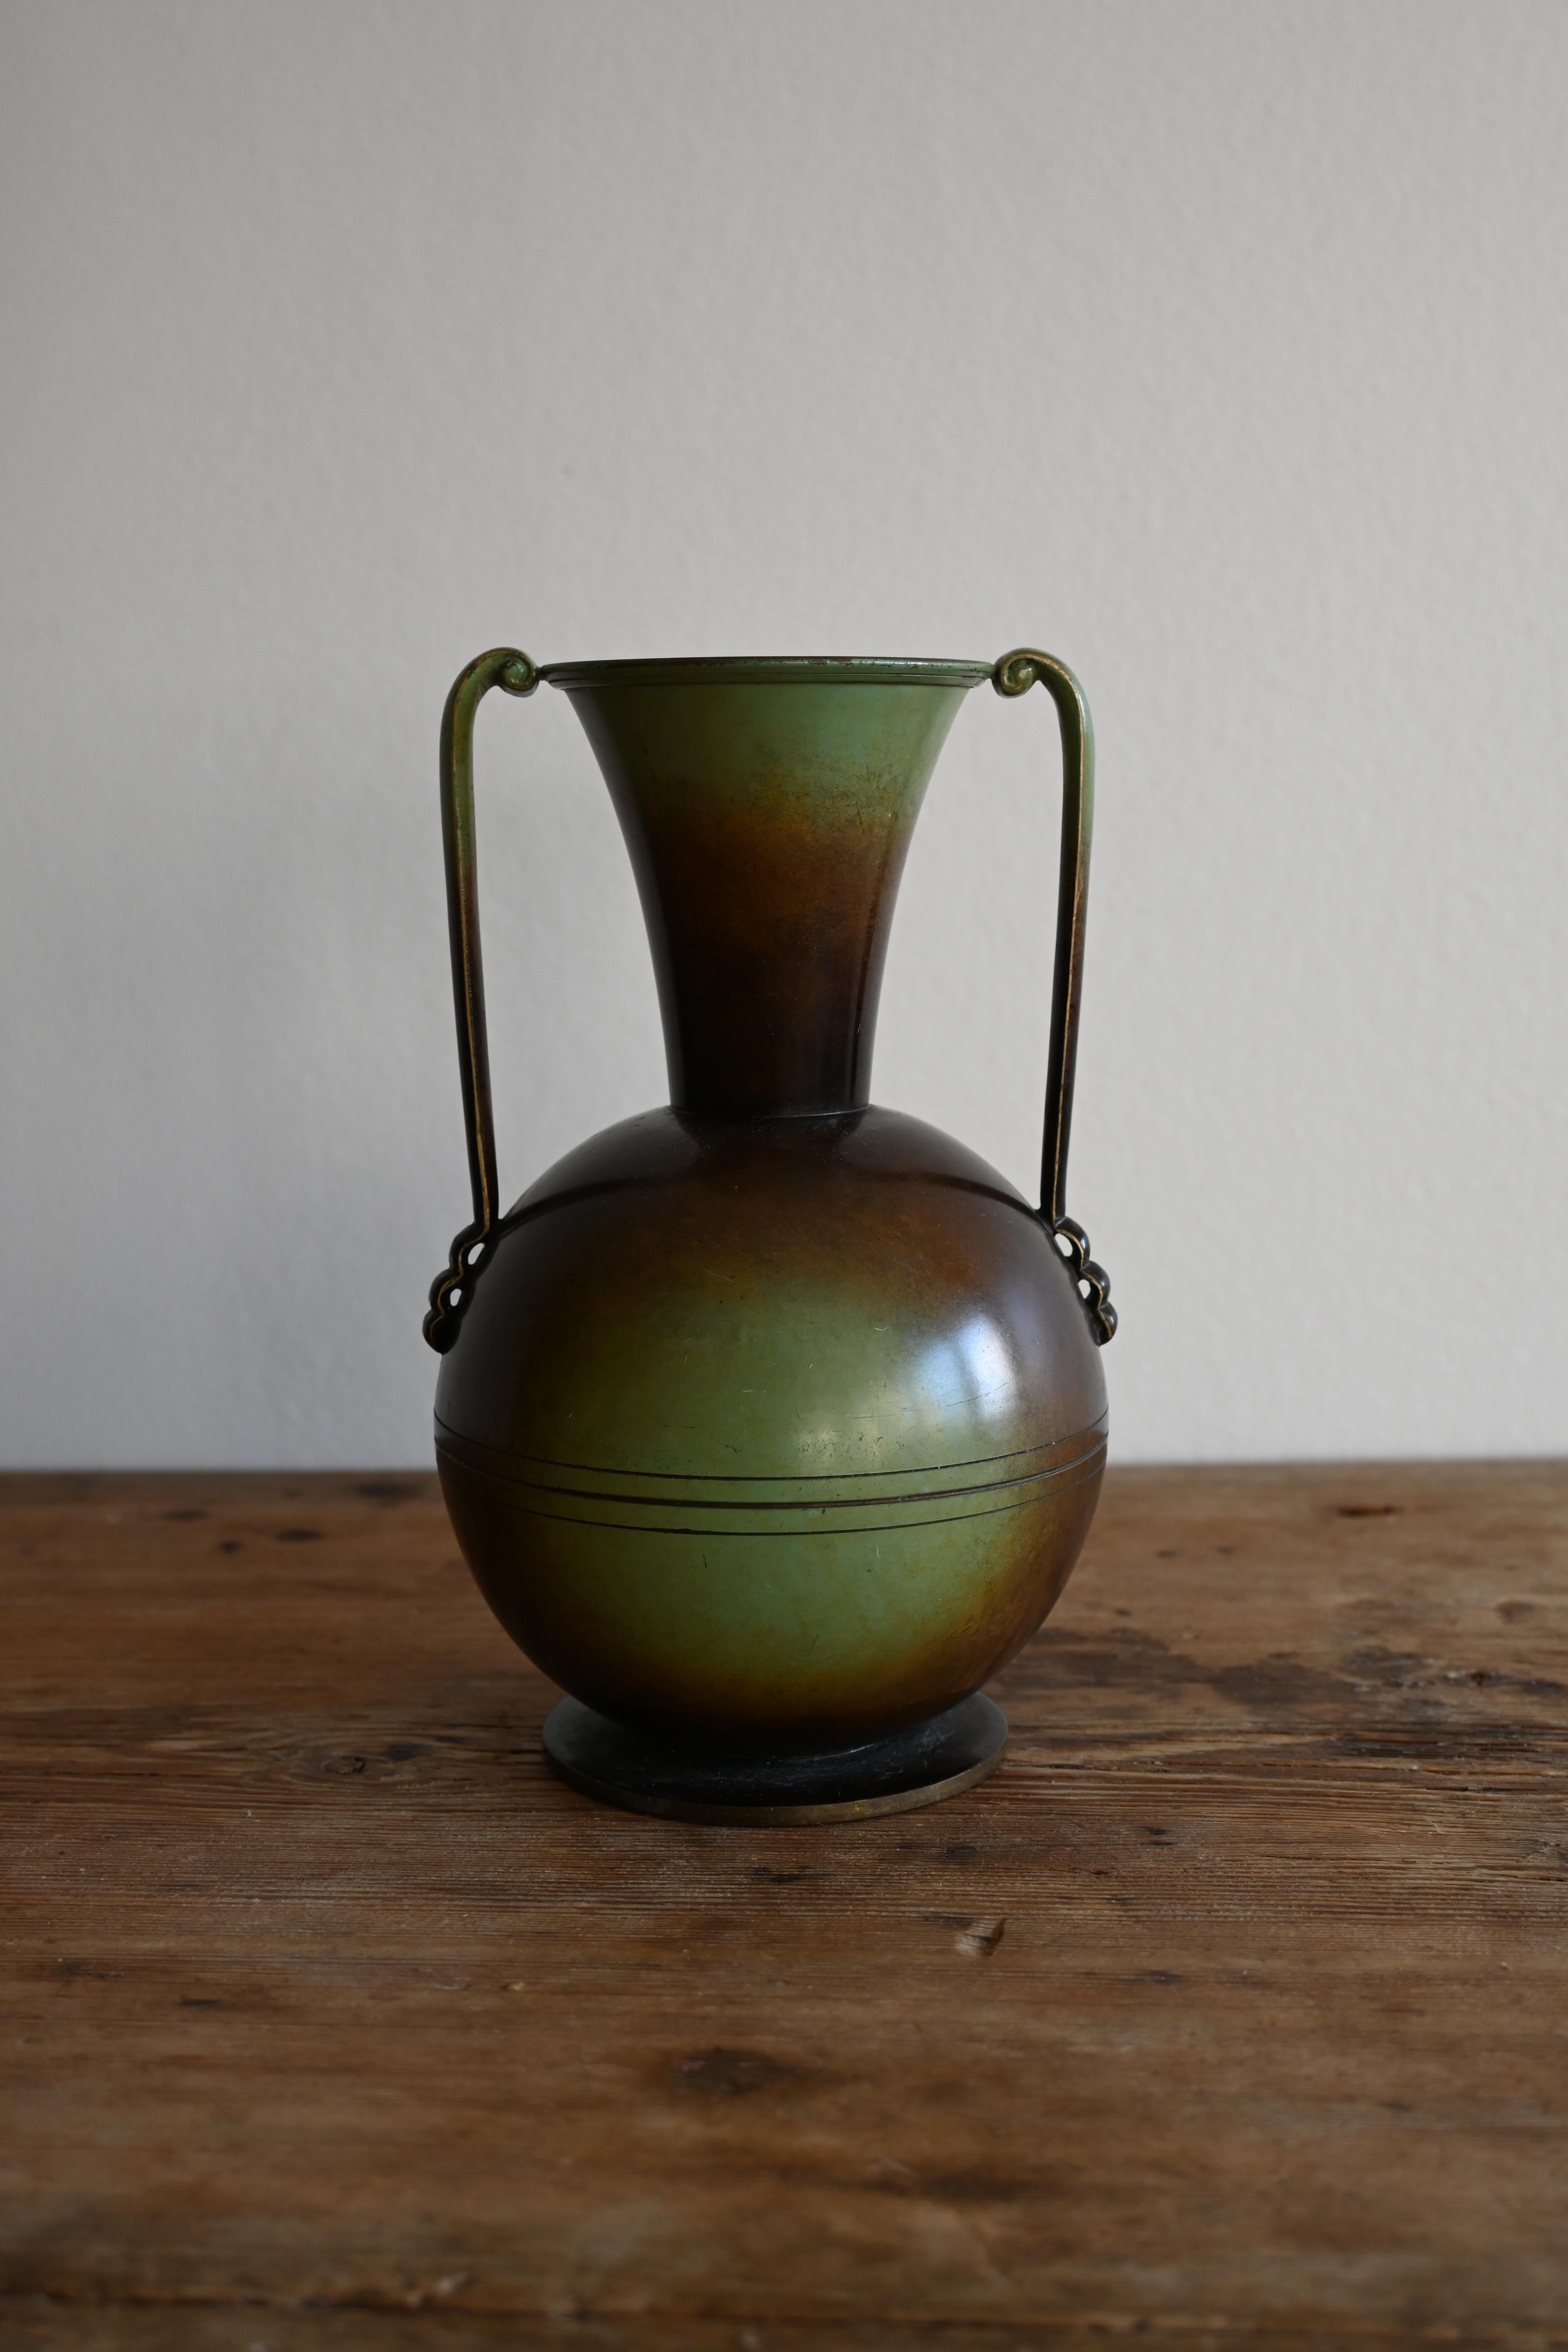 Magnifique vase en bronze patiné d'Ystad Brons, Suède, datant des années 1940. 

Elegant vase en bronze patiné avec des poignées marquées 